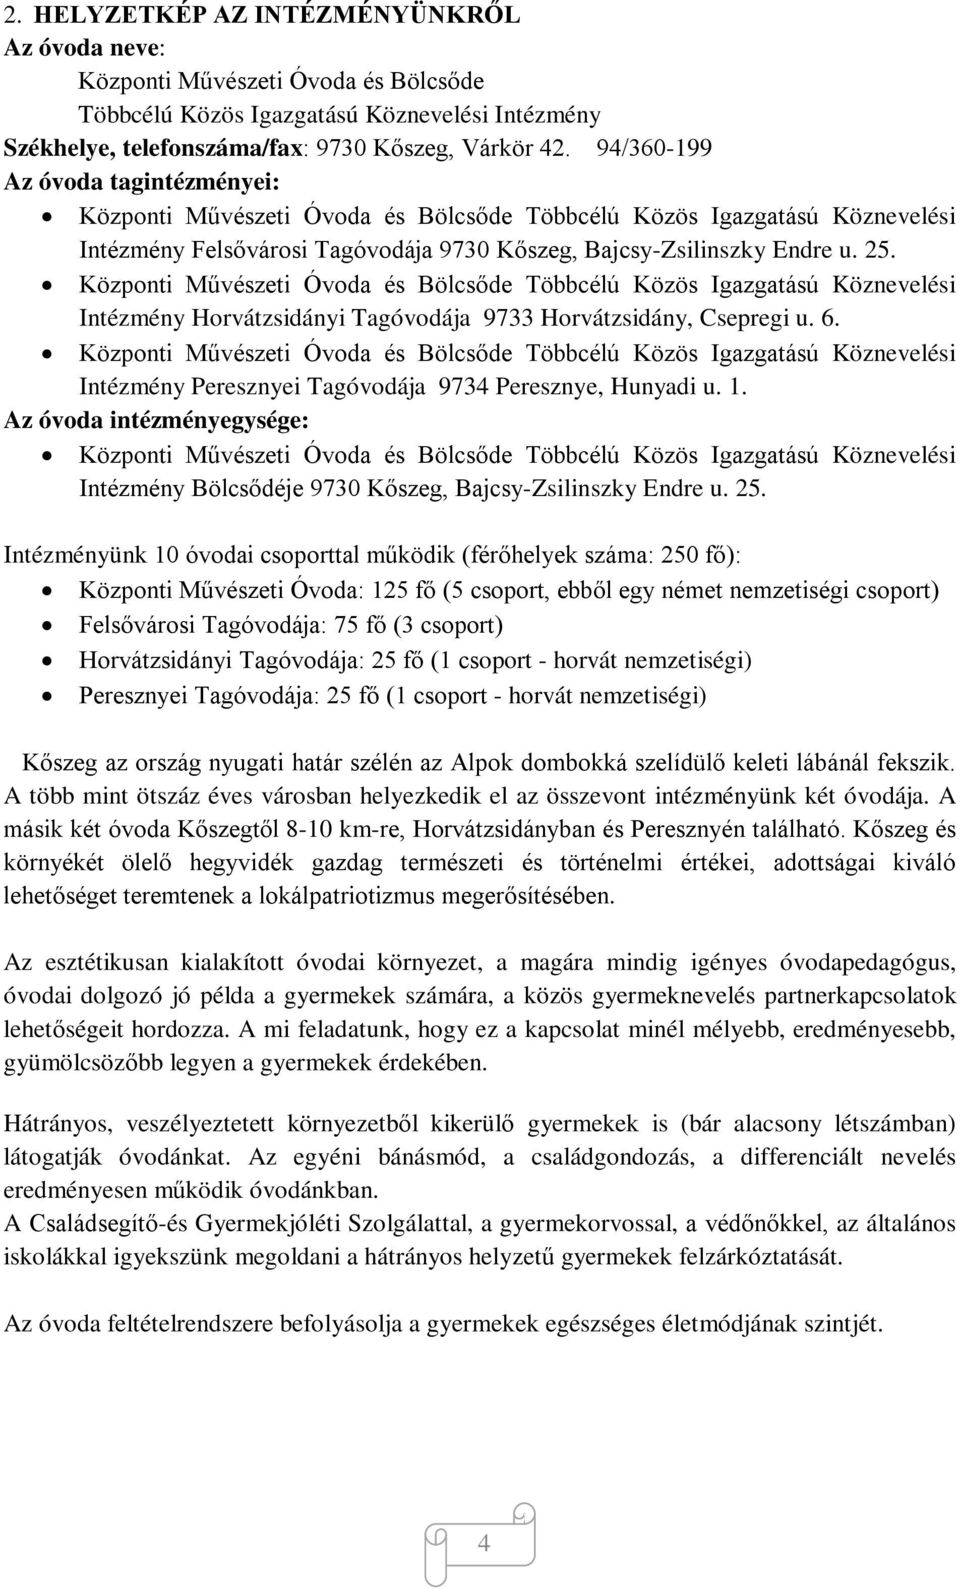 Központi Művészeti Óvoda és Bölcsőde Többcélú Közös Igazgatású Köznevelési Intézmény Horvátzsidányi Tagóvodája 9733 Horvátzsidány, Csepregi u. 6.